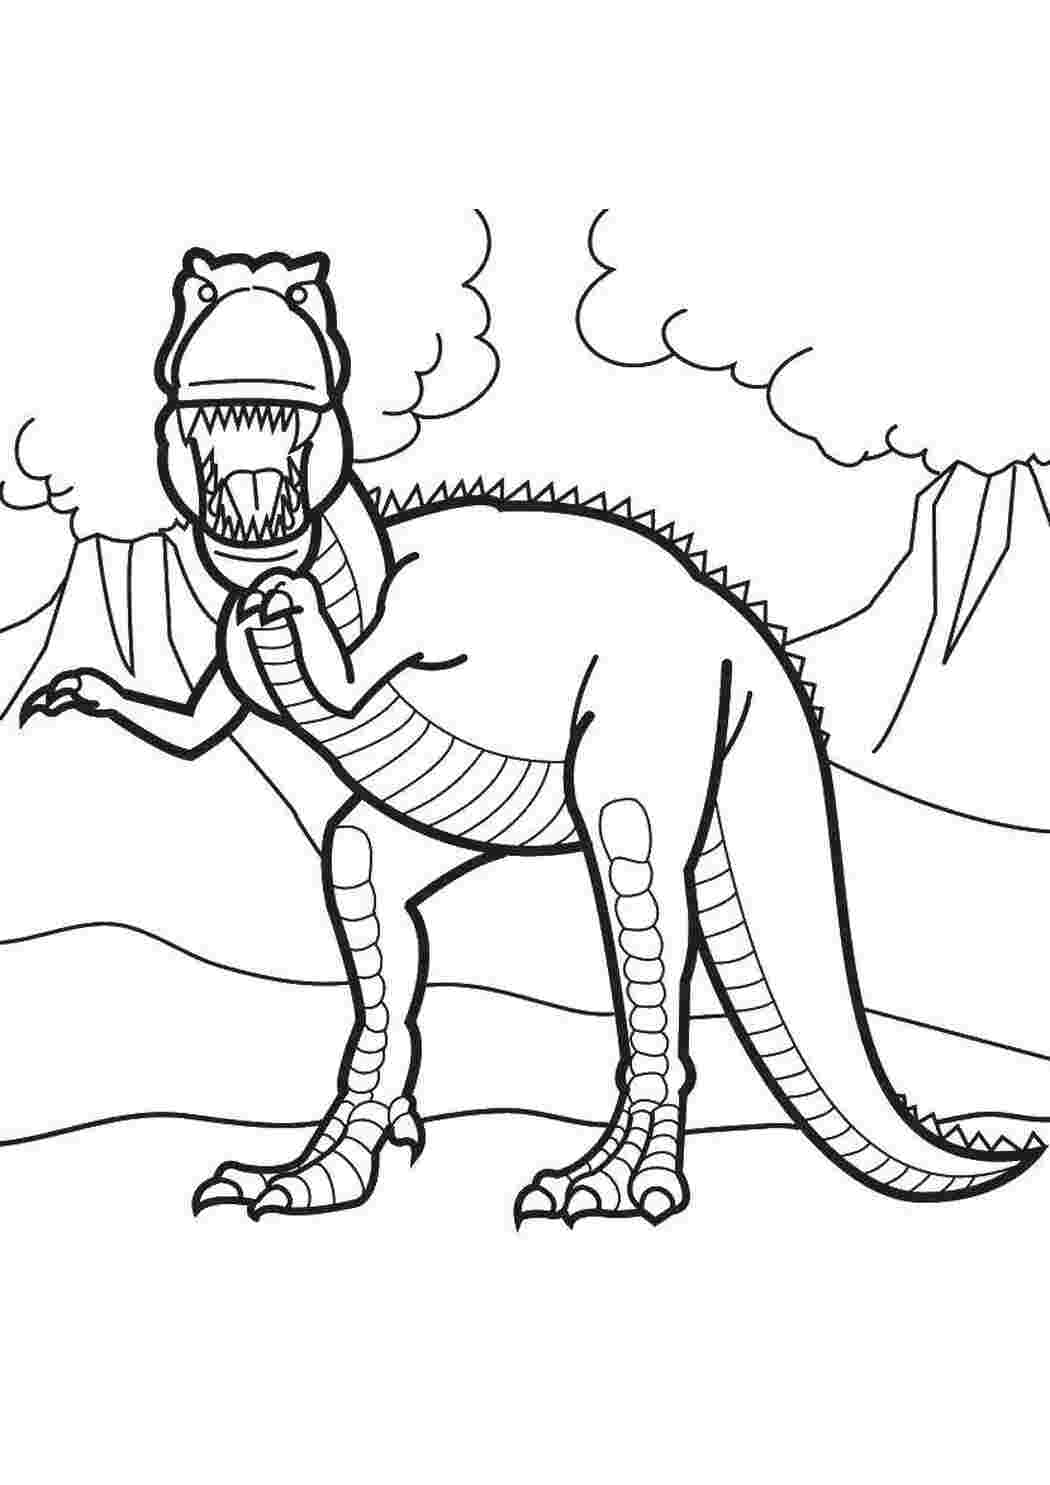 Динозавры раскраска а4. Дино рекс раскраска. Терекс динозавры раскраска. Динозавр раскраска для детей. Шонизавр раскраска.